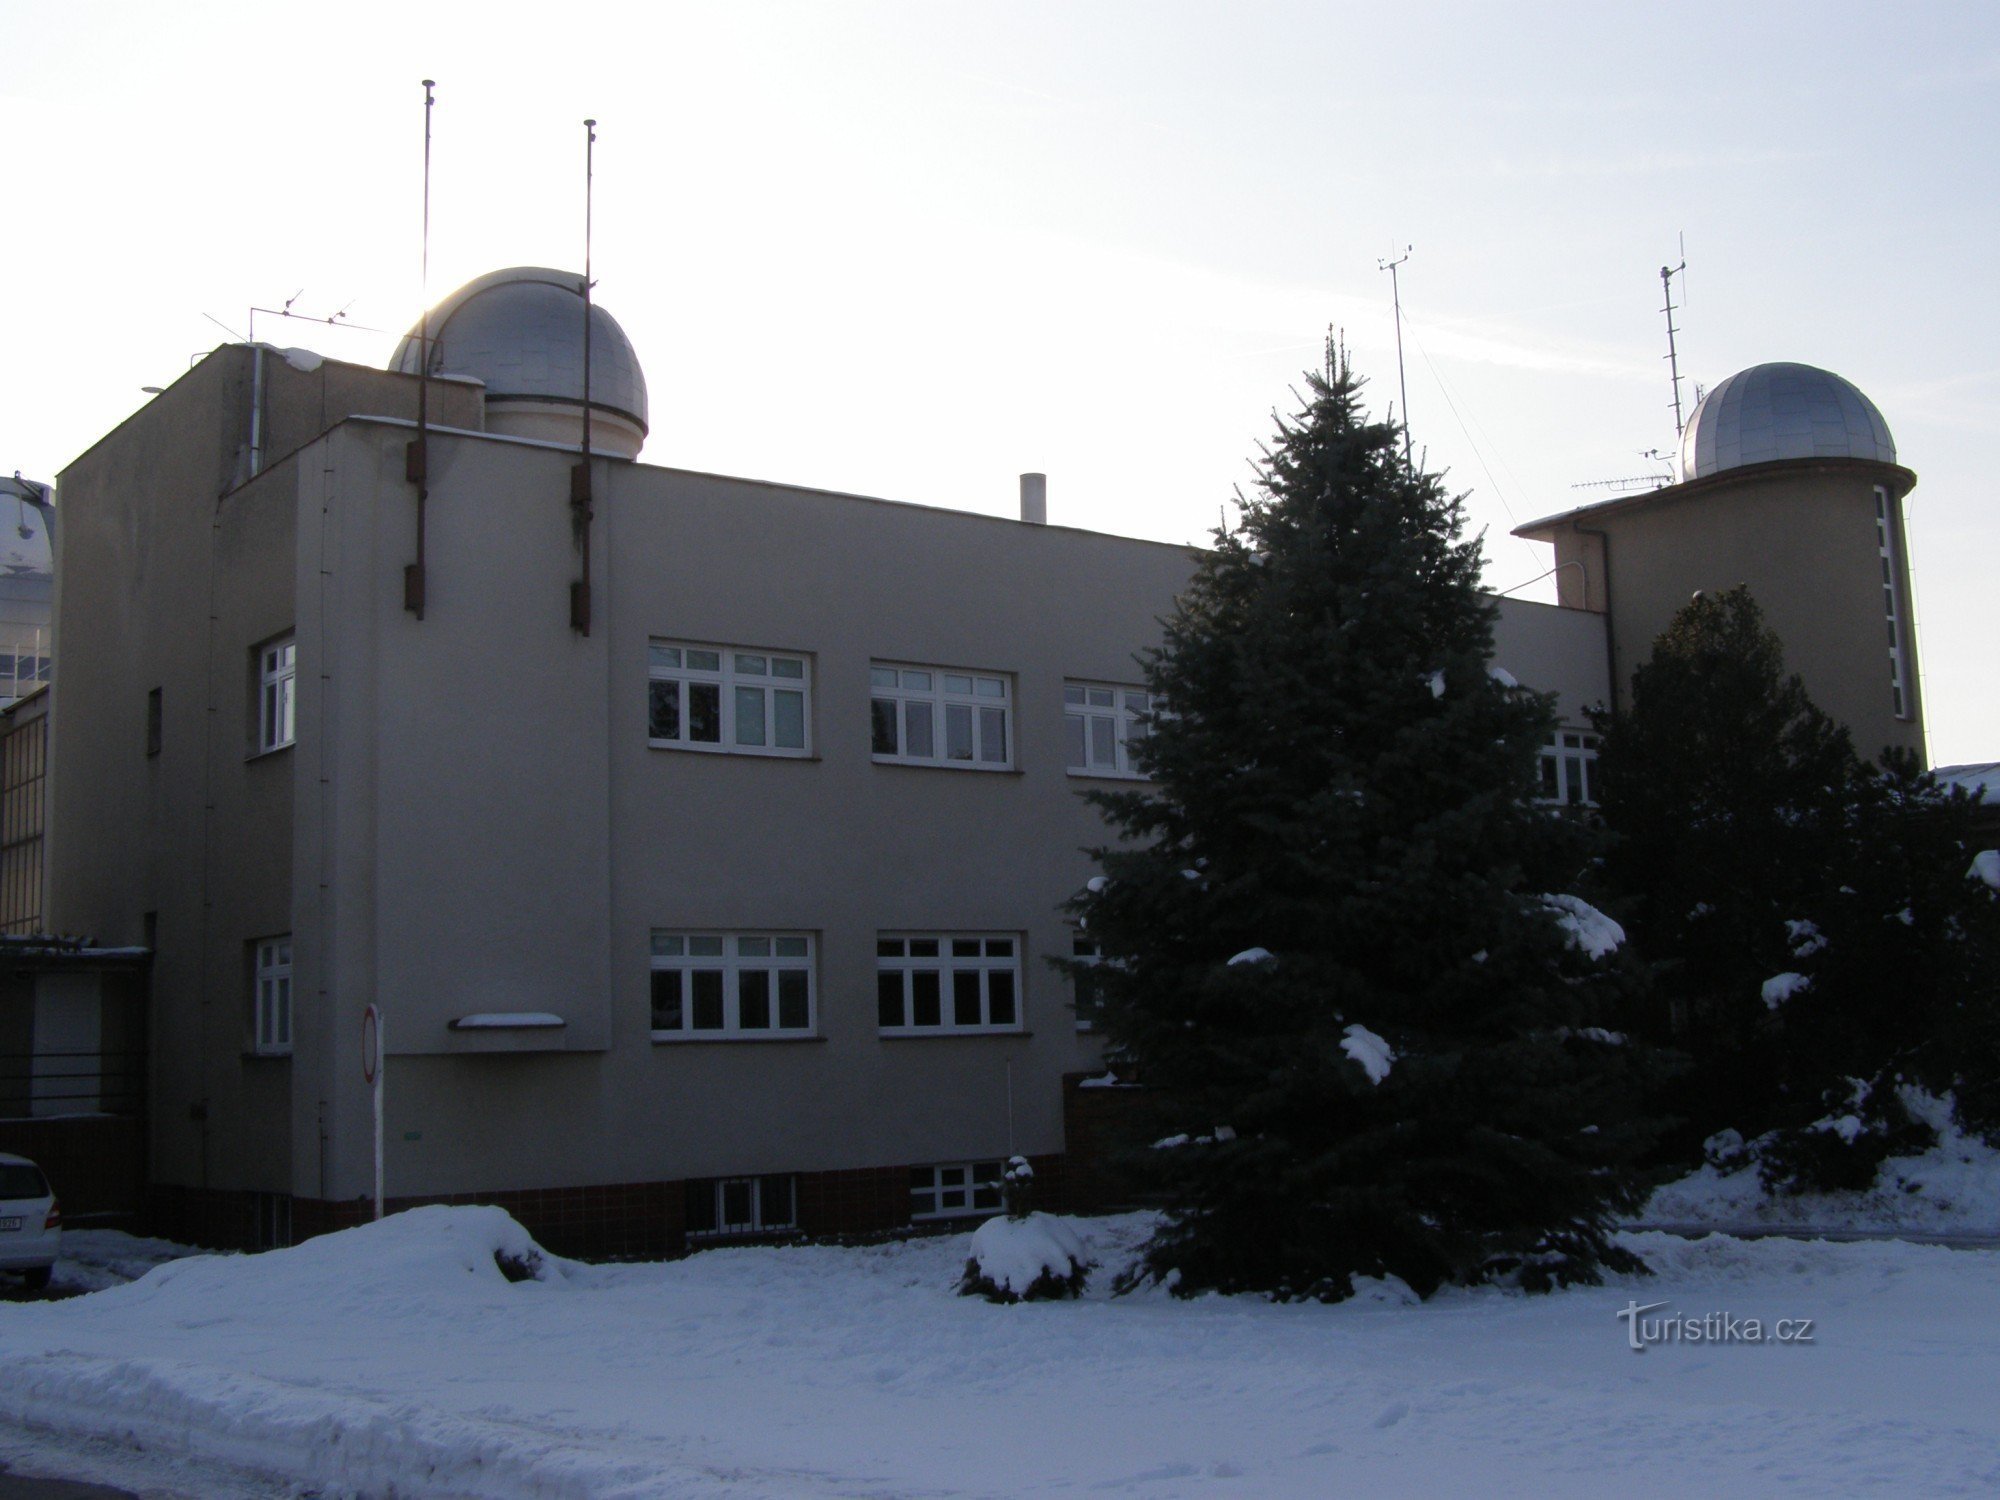 Hradec Králové - observatorio y planetario